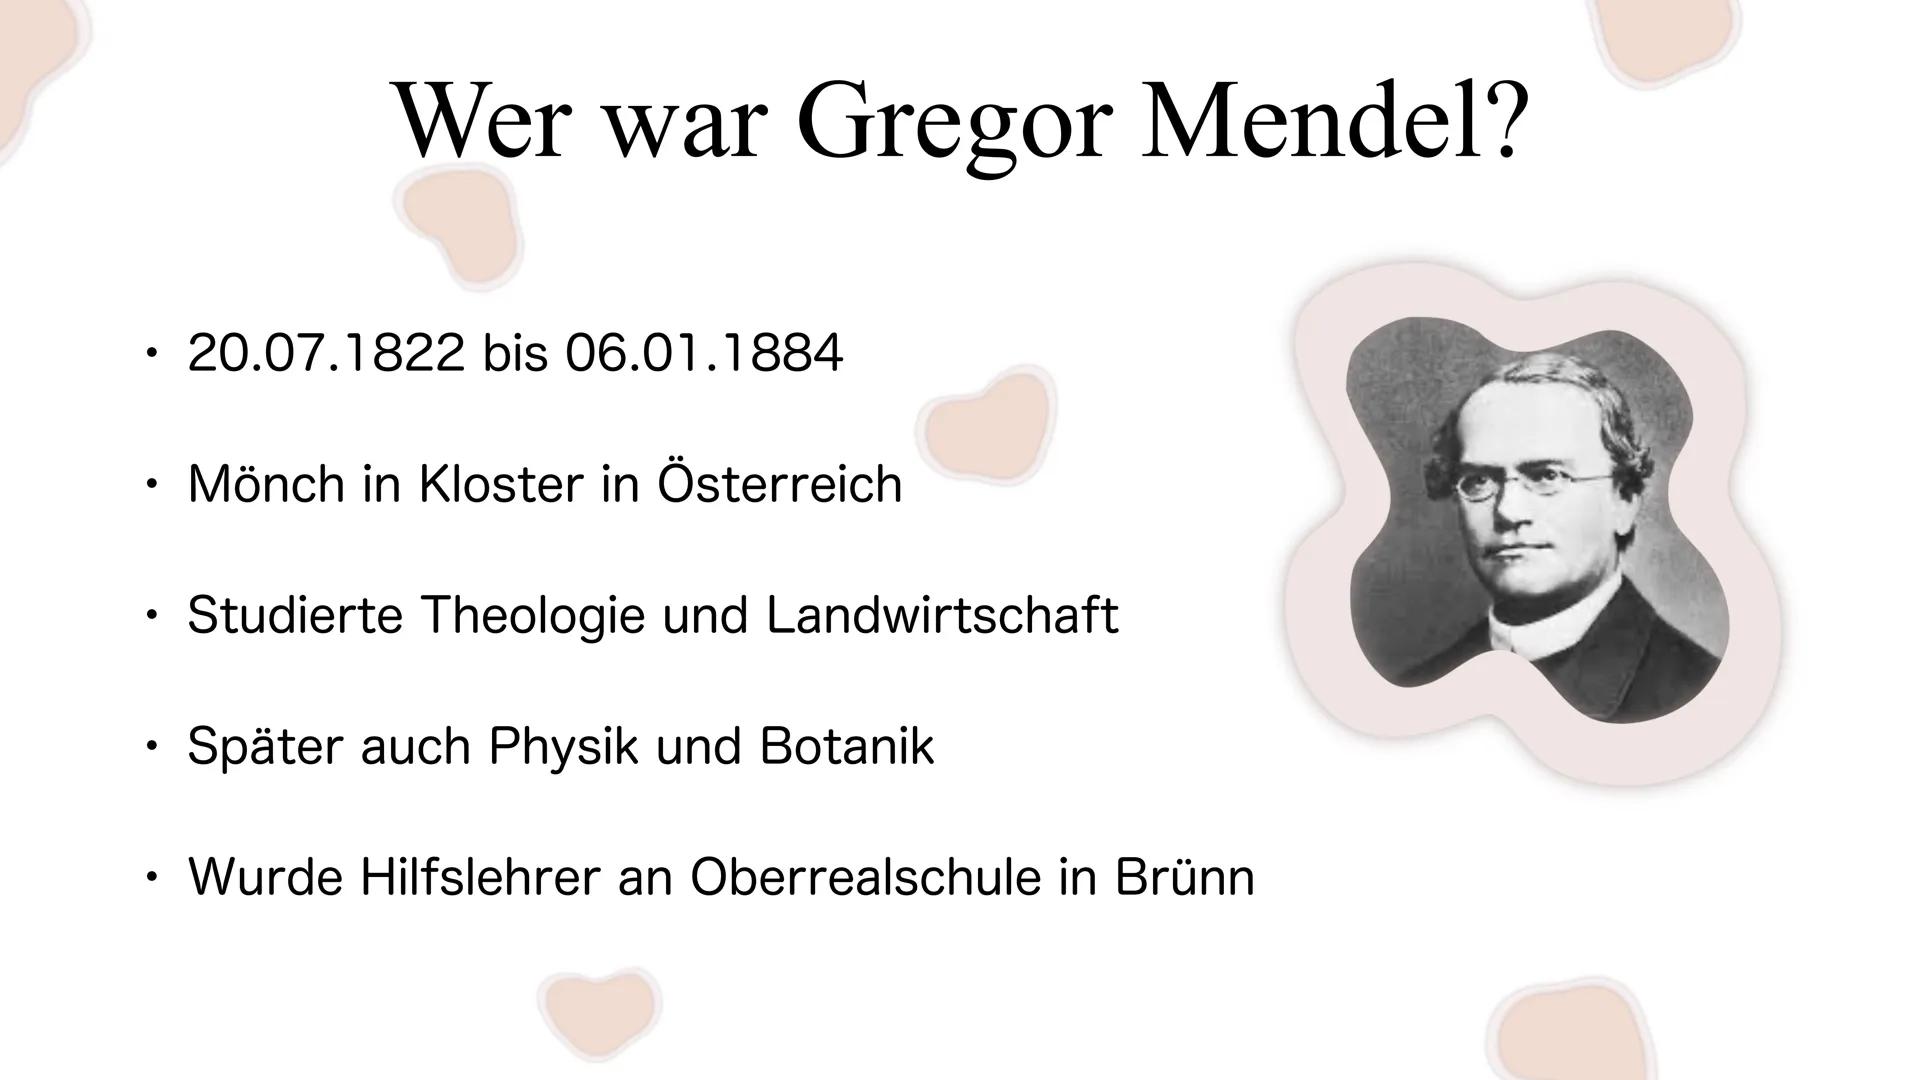 Die Mendelschen Regeln
Gregor Mendel Gliederung
1. Wer war Gregor Mendel?
2. Wie fand Mendel die meldelschen Regeln heraus?
3. Grundlagenwis